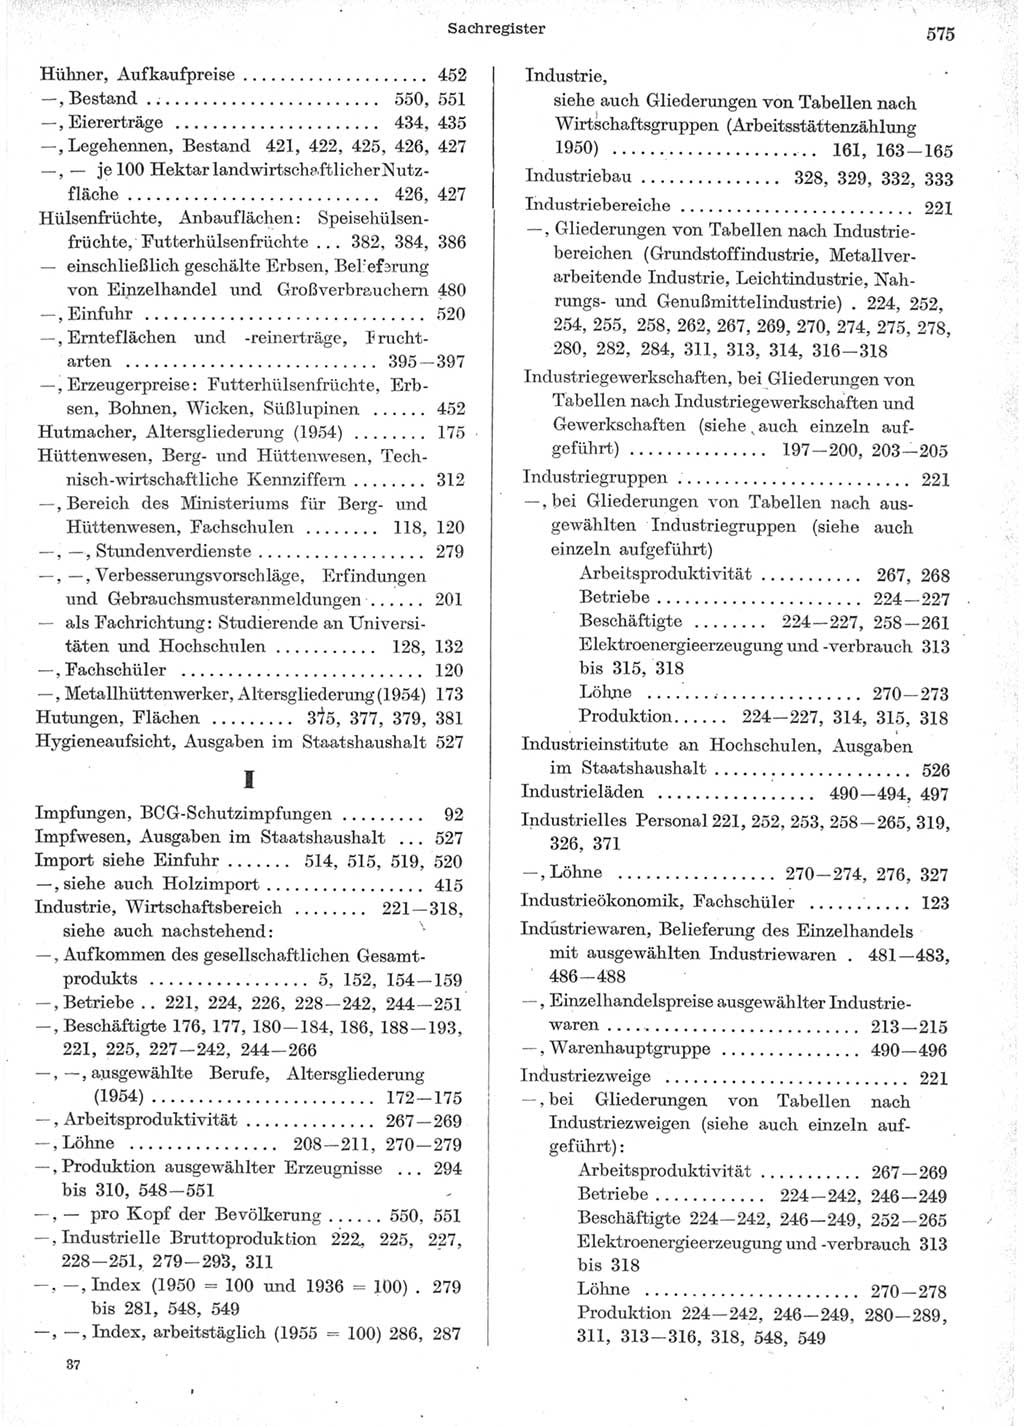 Statistisches Jahrbuch der Deutschen Demokratischen Republik (DDR) 1957, Seite 575 (Stat. Jb. DDR 1957, S. 575)